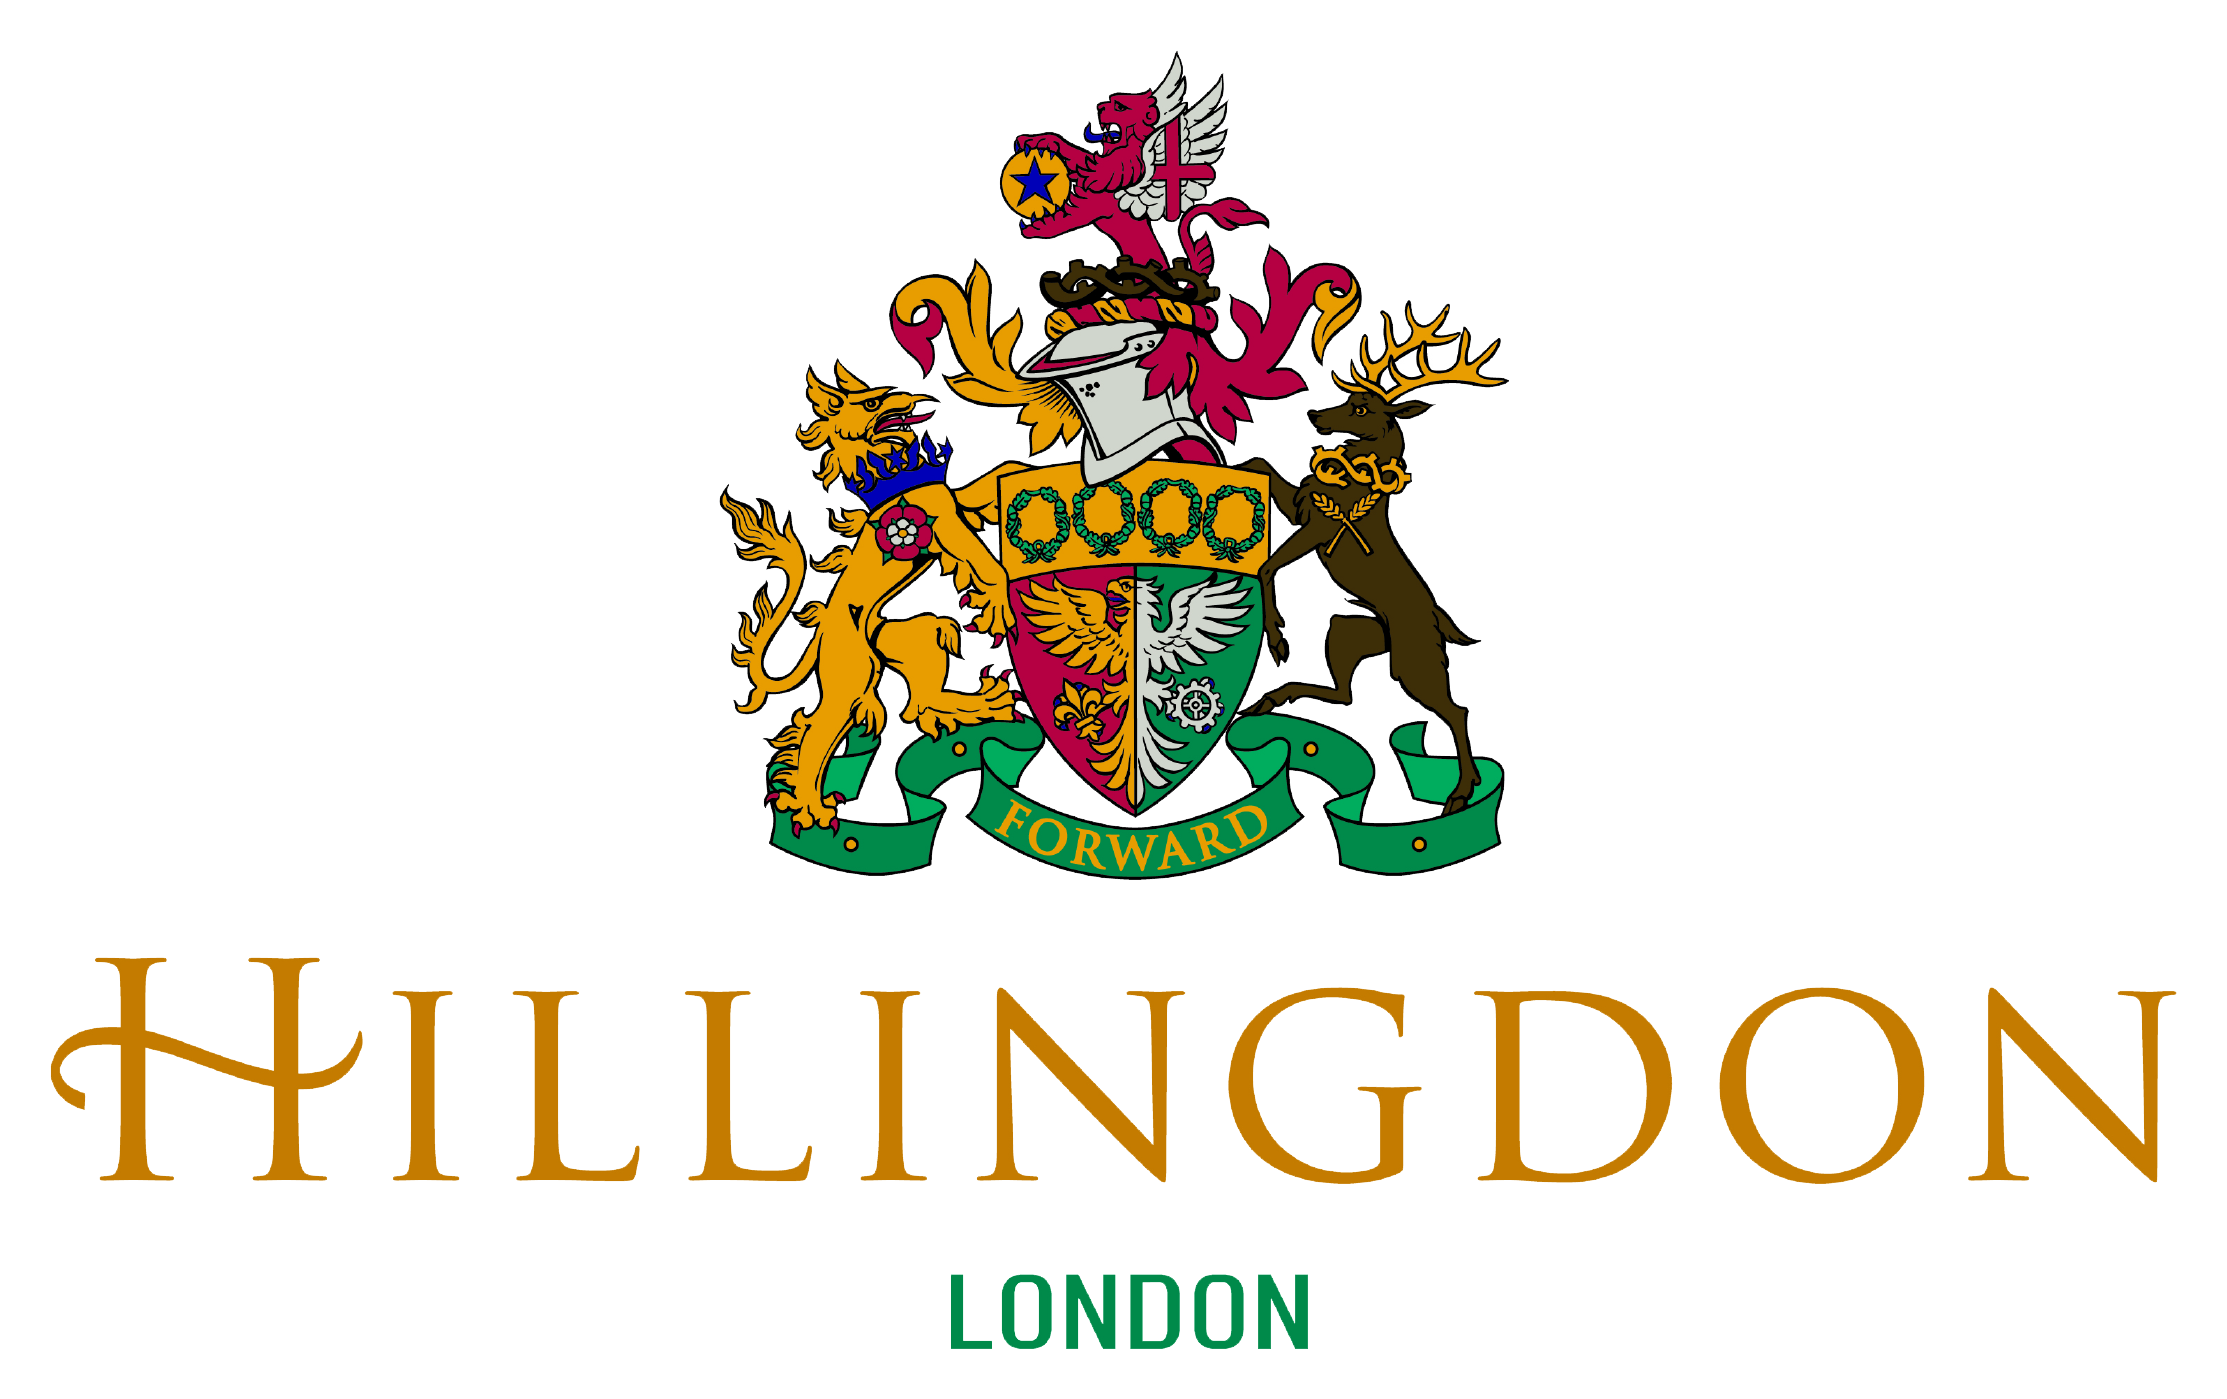 Hillingdon Council logo